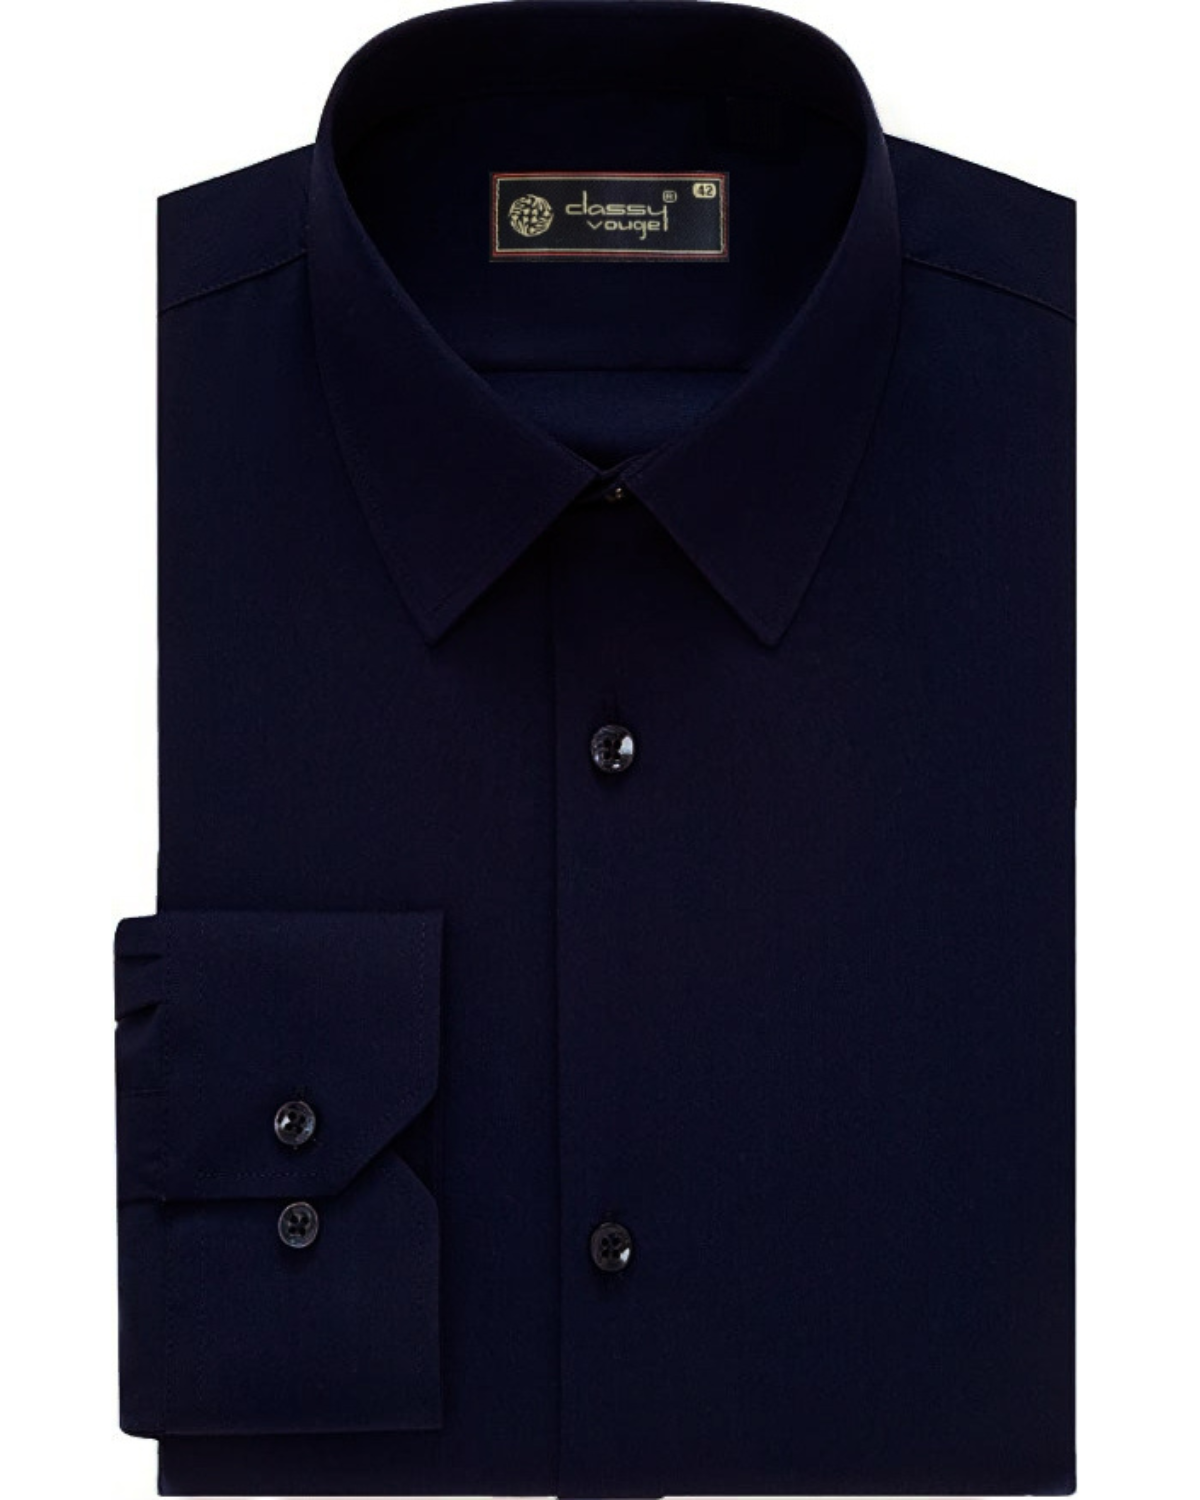 Navy Blue Plain Formal Full Sleeve Shirt For Men